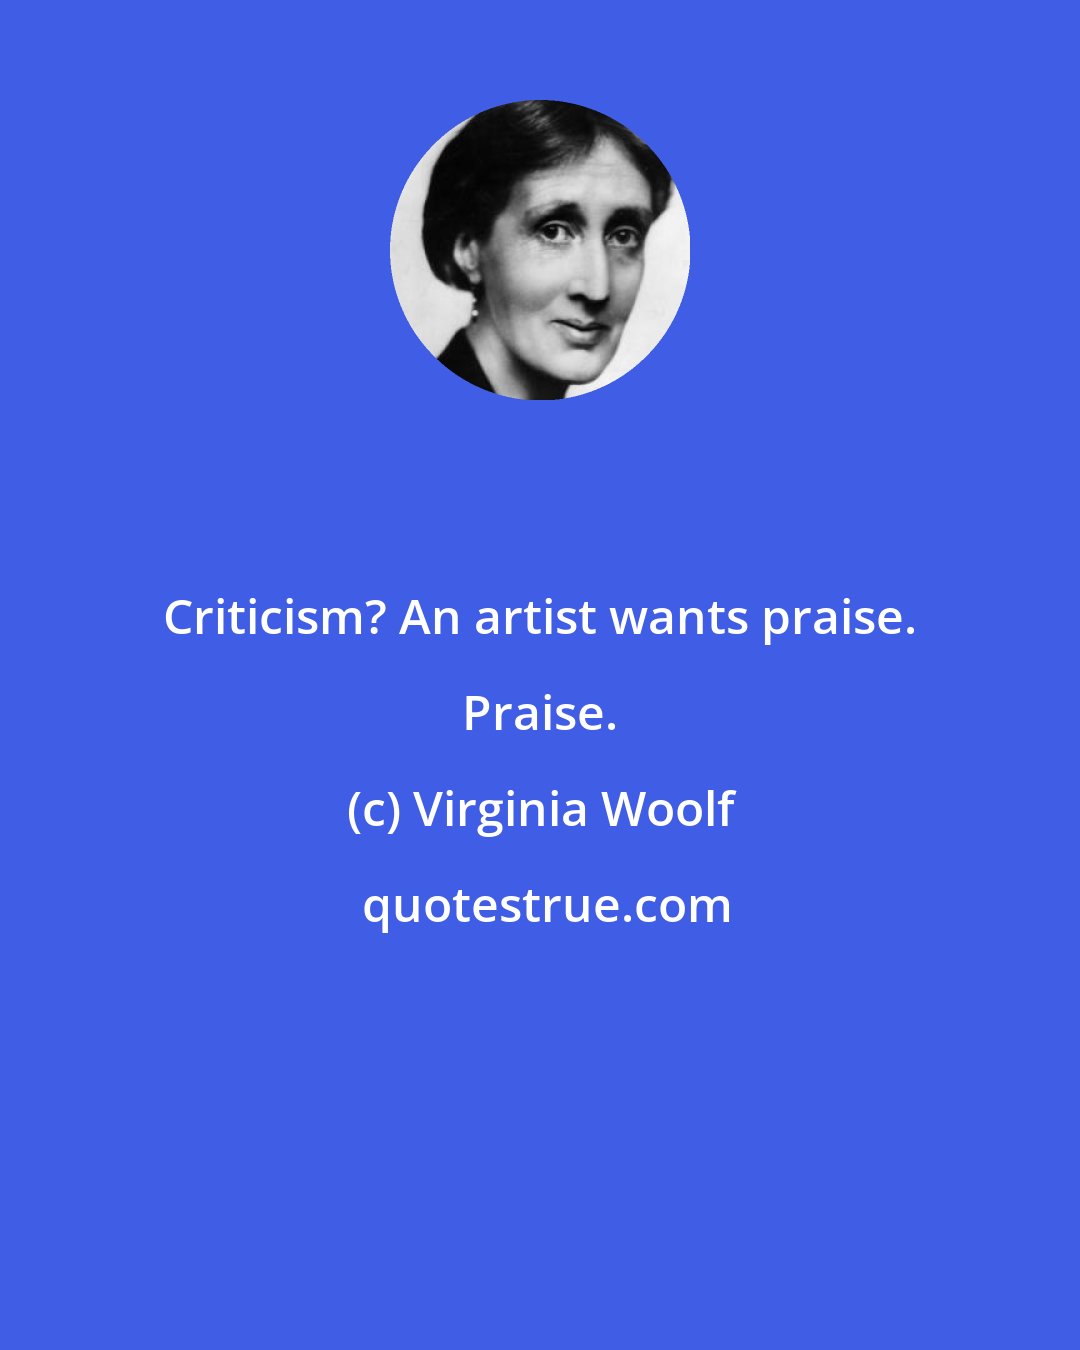 Virginia Woolf: Criticism? An artist wants praise. Praise.